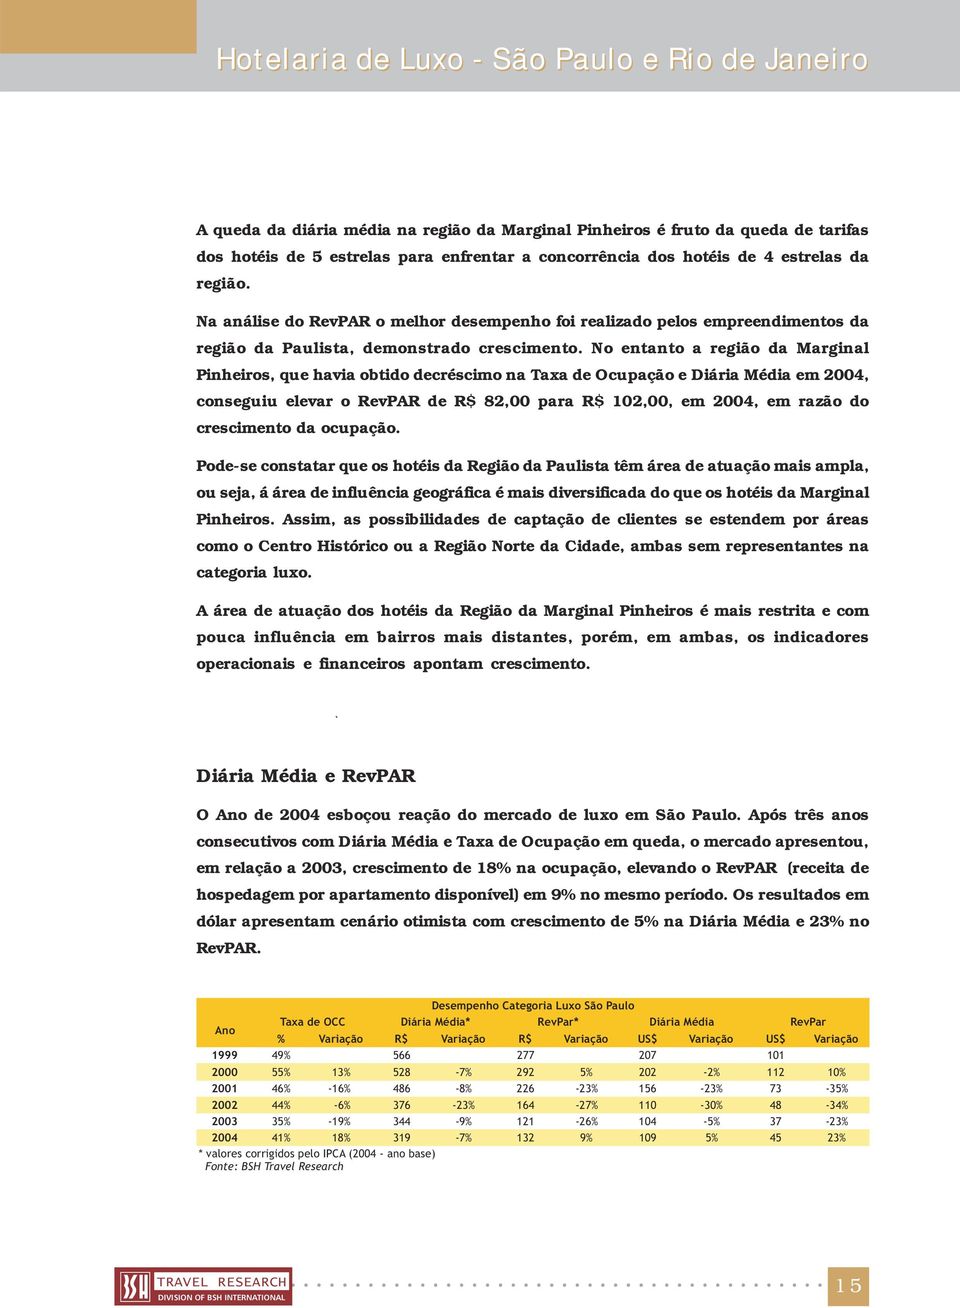 Na análise do RevPAR o melhor desempenho foi realizado pelos empreendimentos da região da Paulista, demonstrado crescimento.